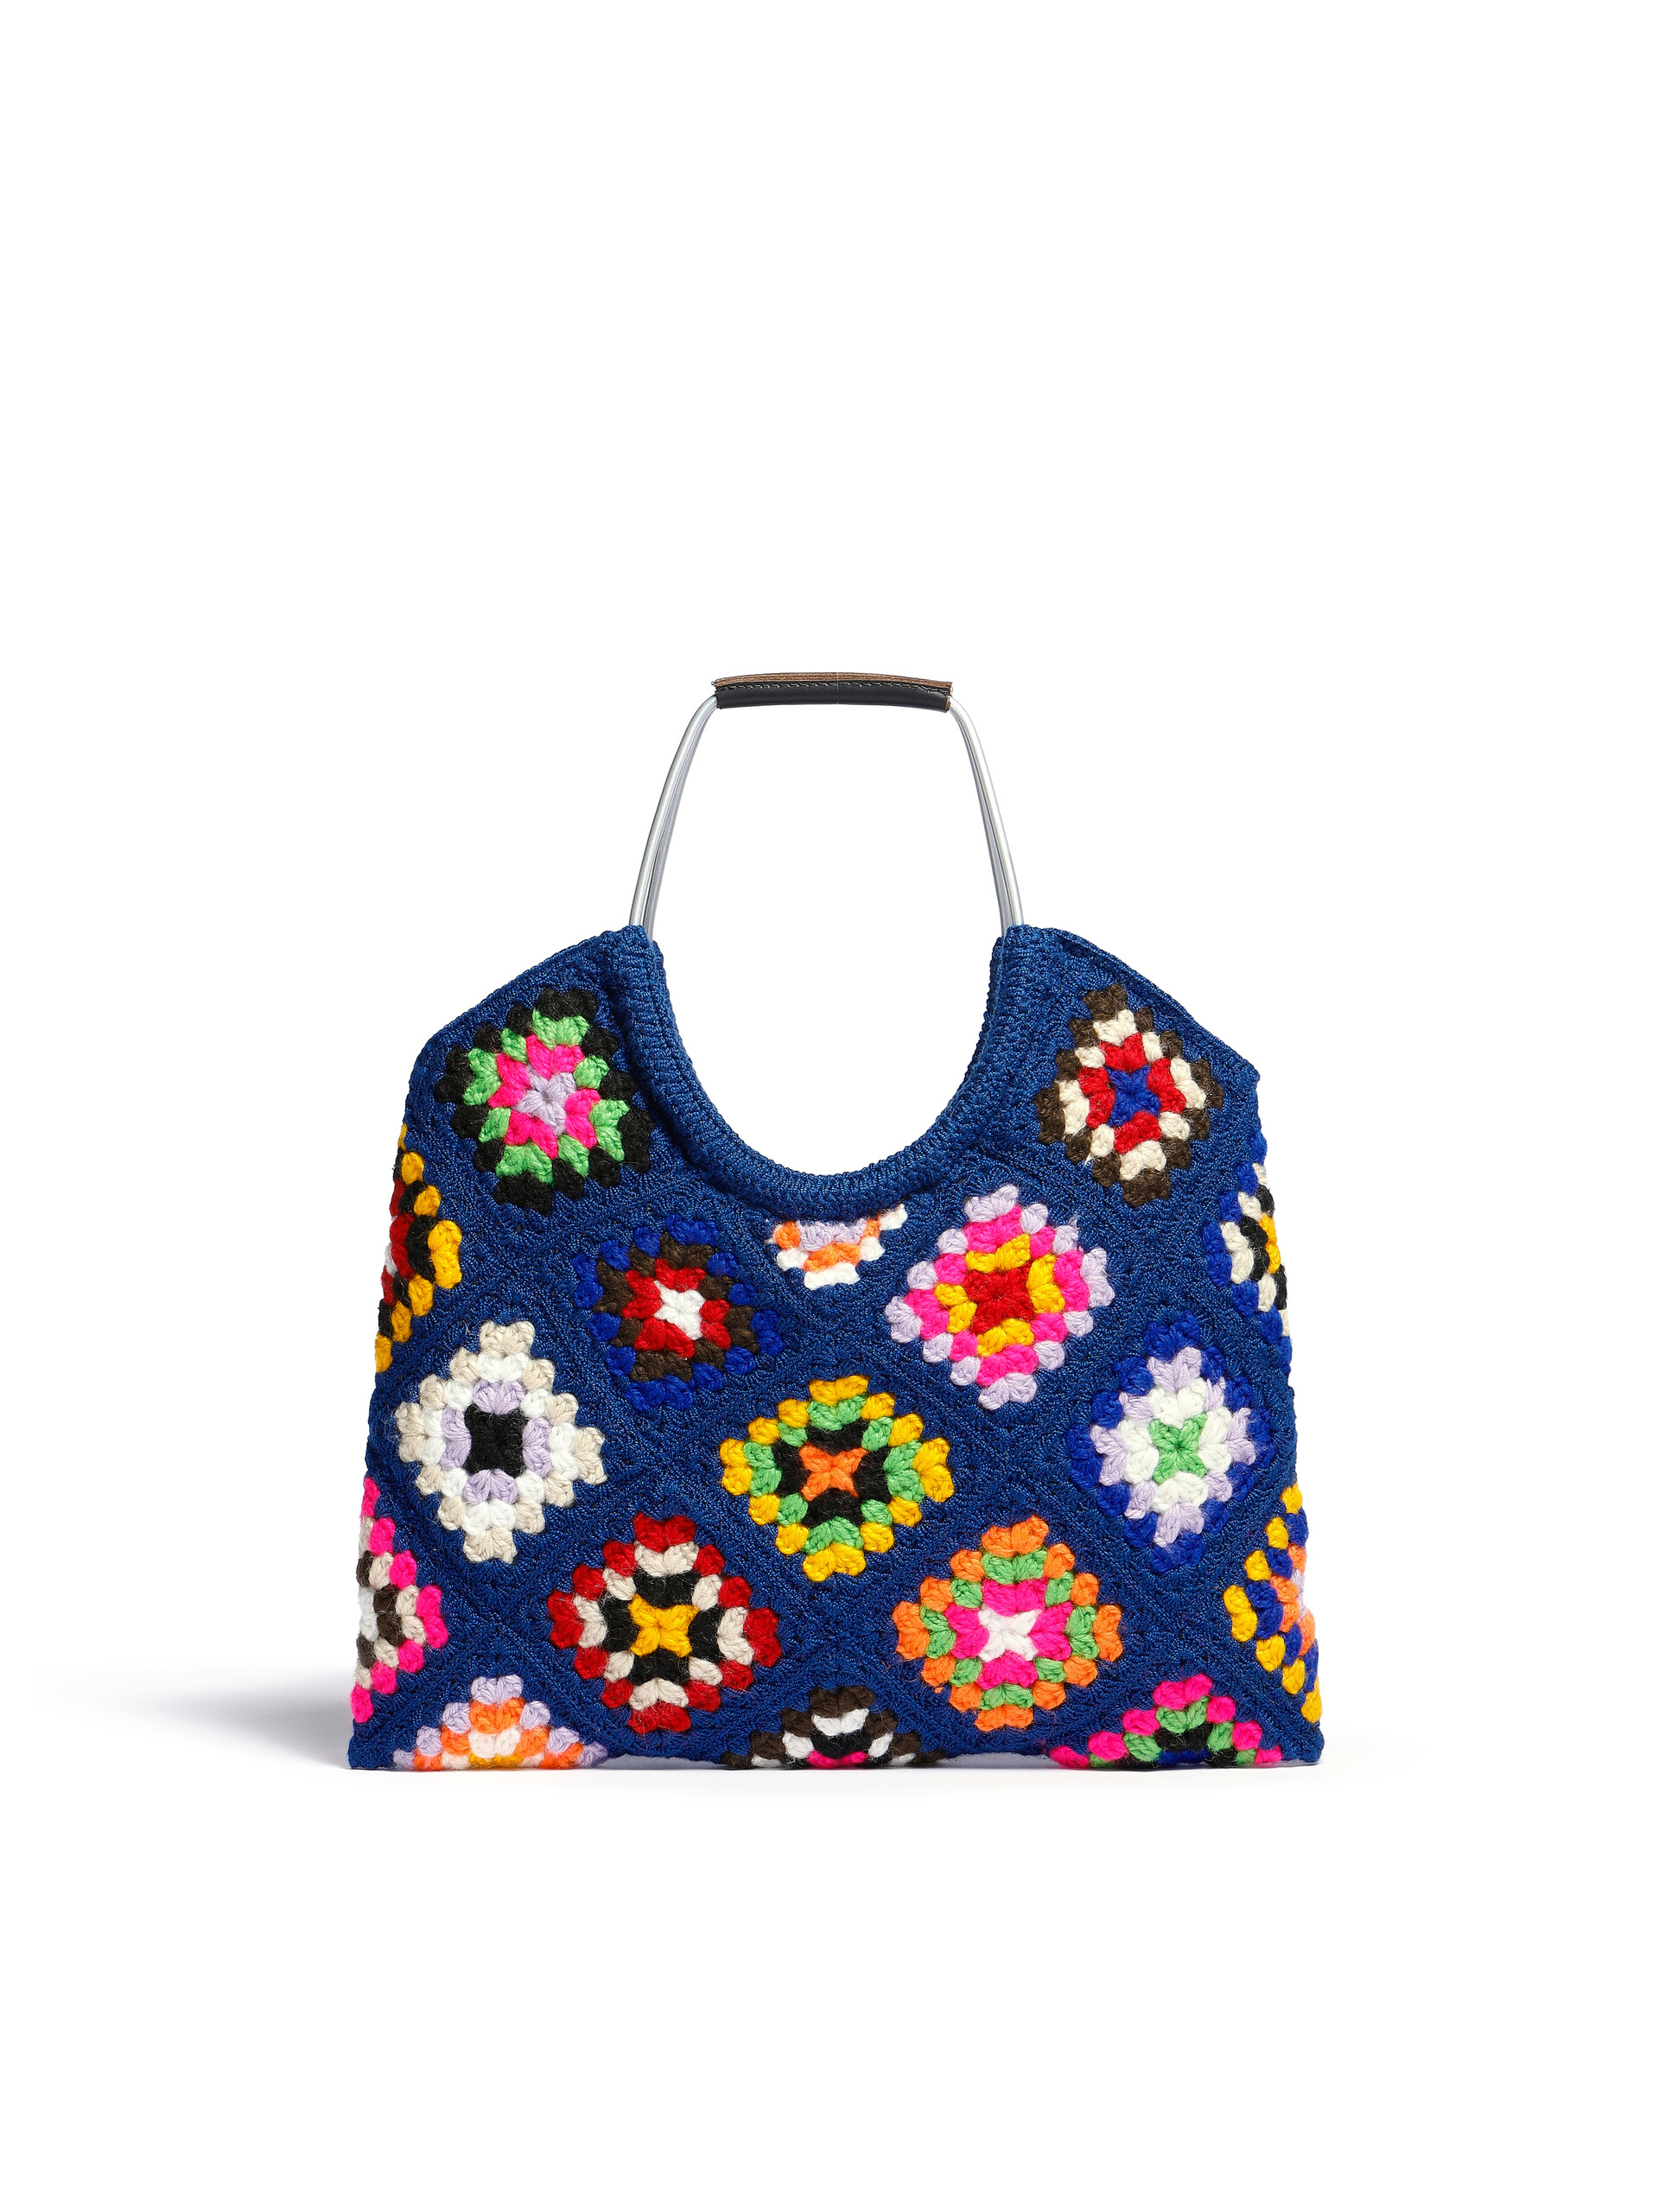 Blue Marni Market multicoloured crochet bag - Bags - Image 3